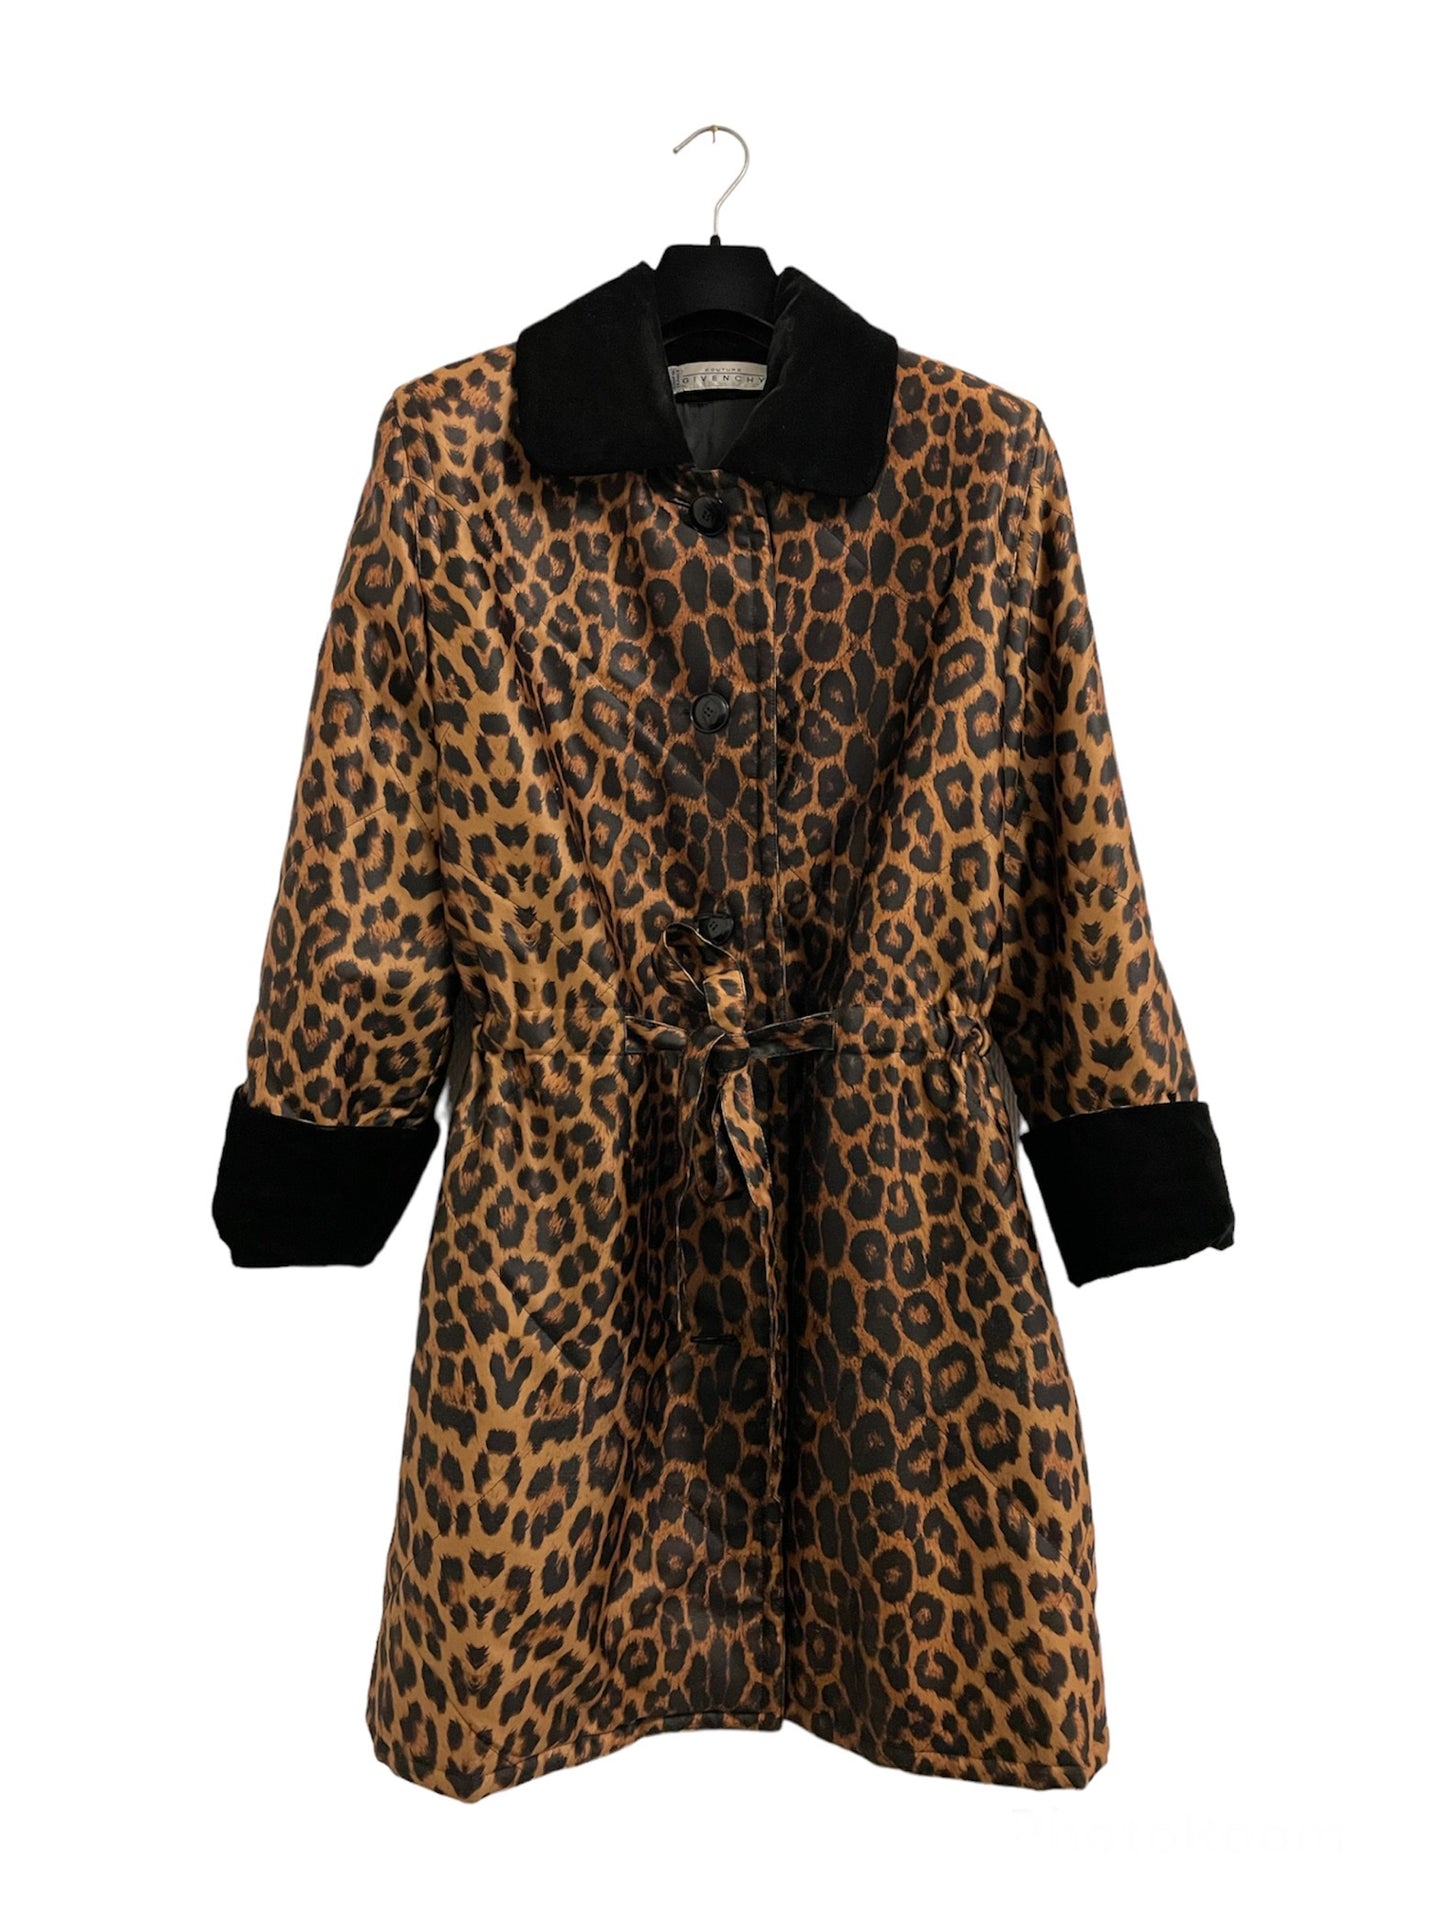 Manteau léopard Givenchy couture